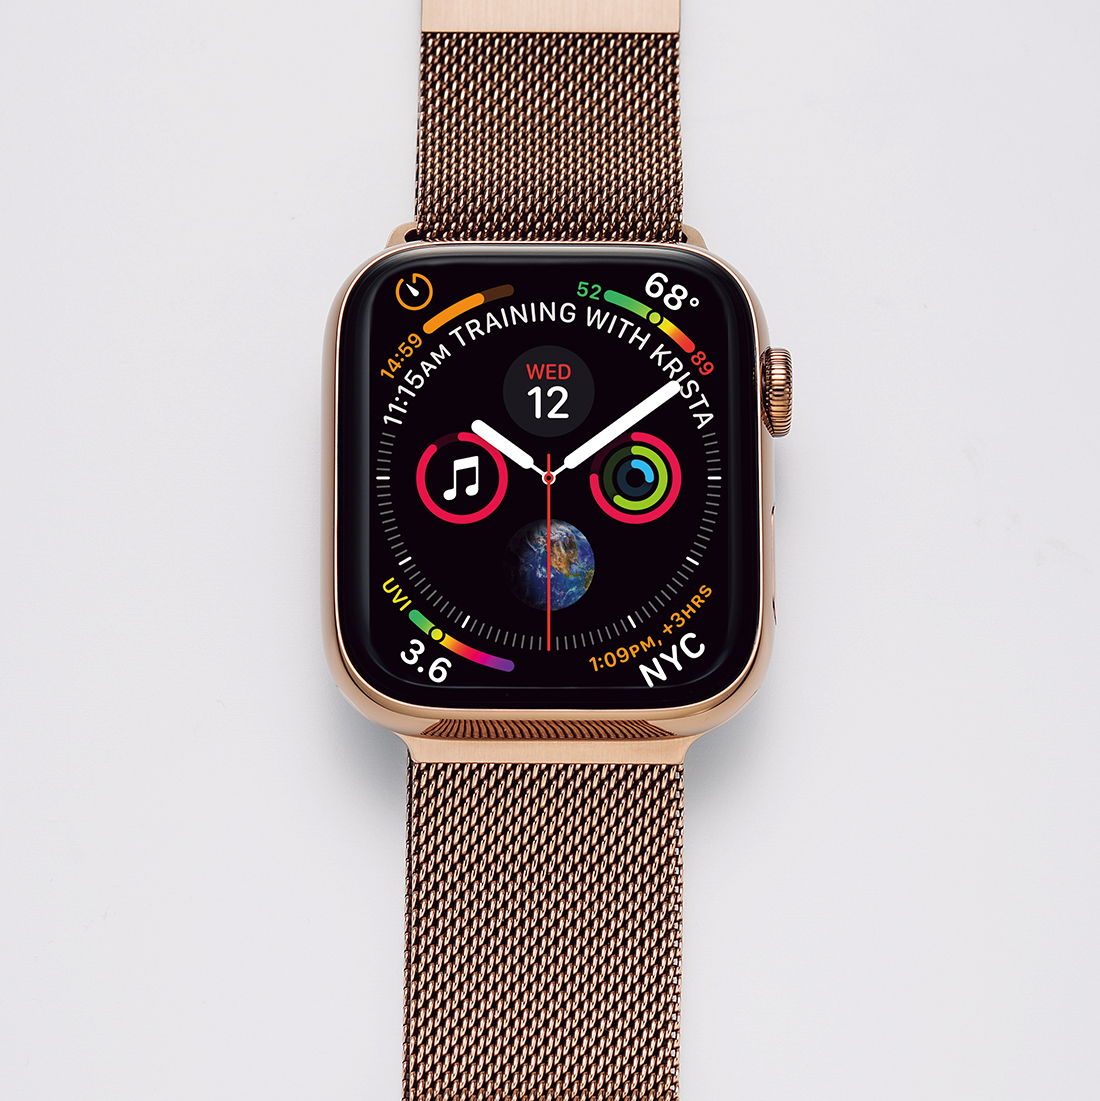 発表から早数カ月。Apple Watch 5とApple Watch 4では、何が違うのか 